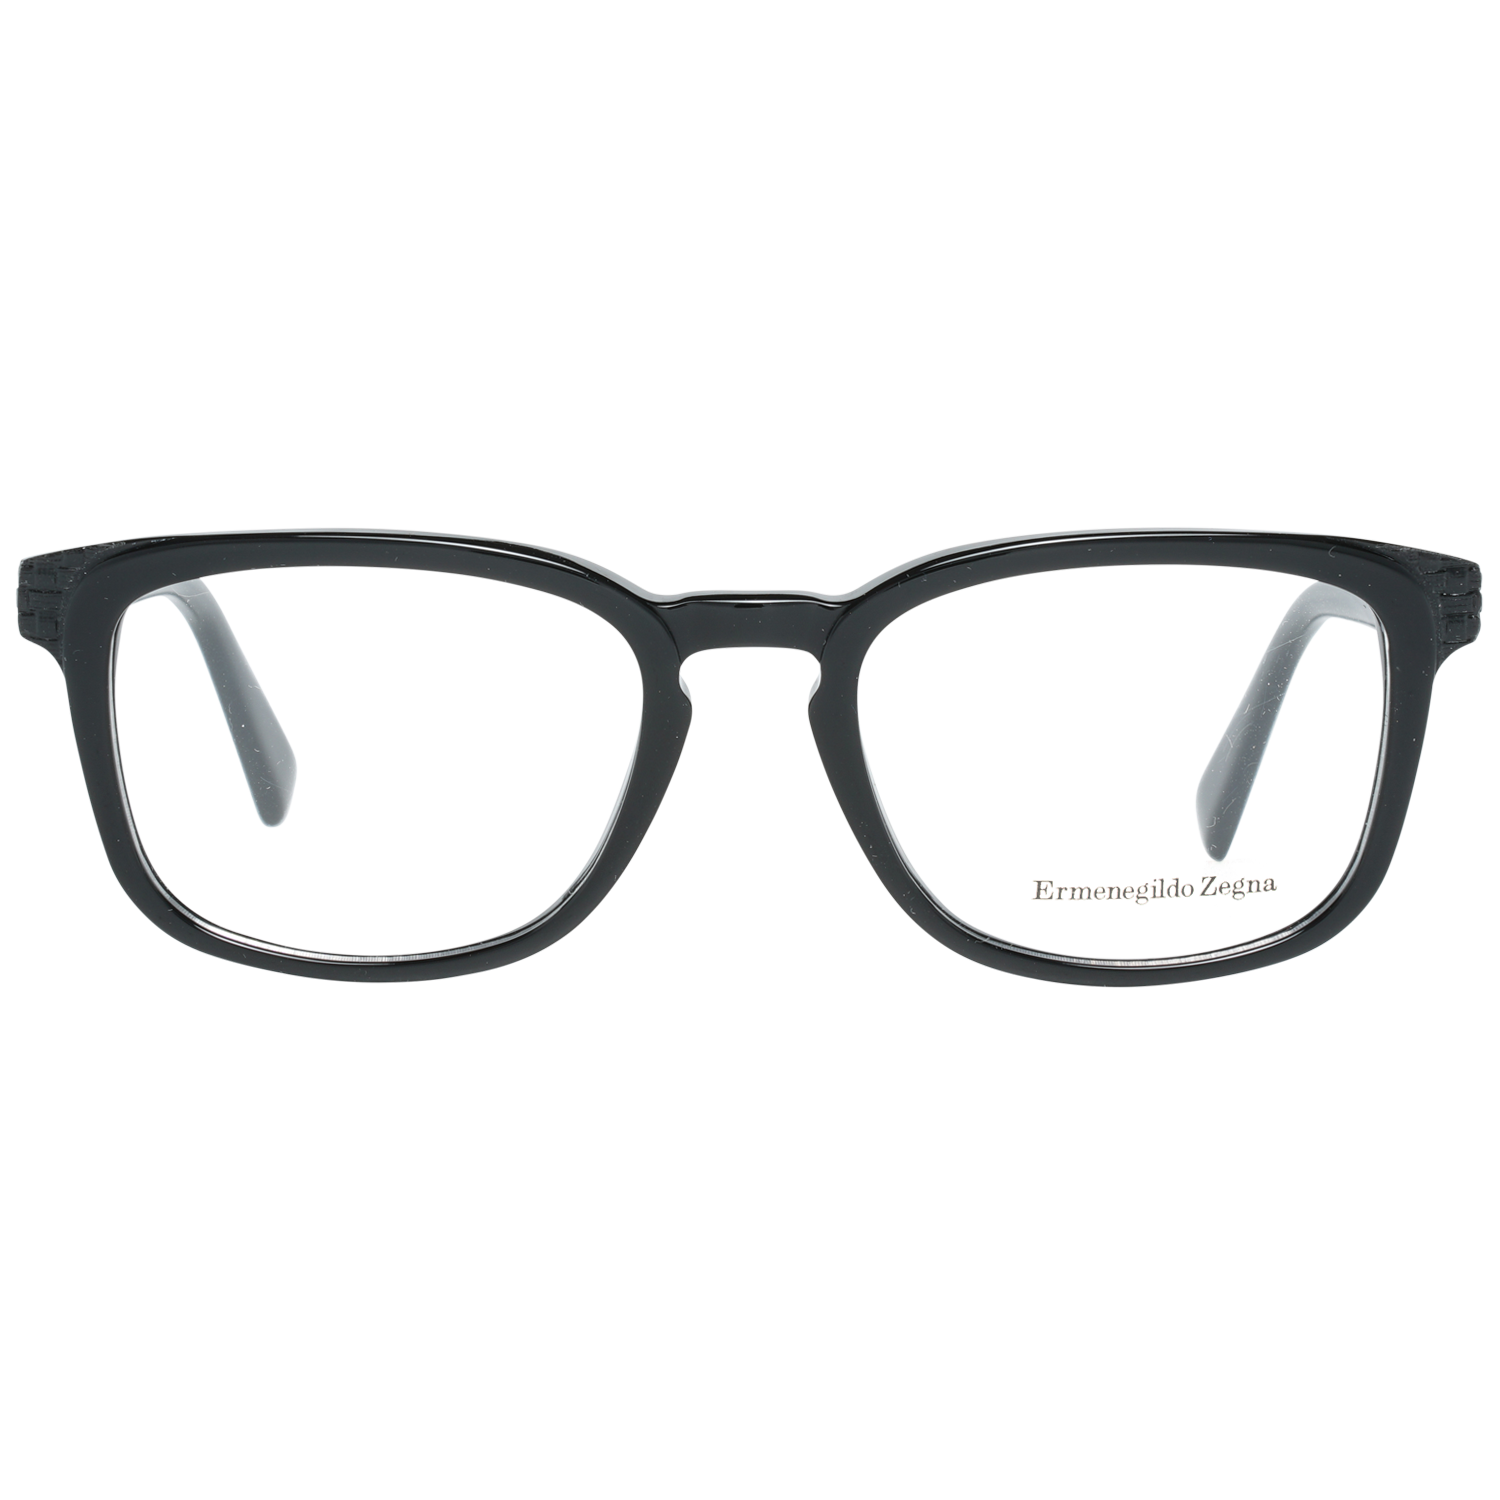 Ermenegildo Zegna Frames Ermenegildo Zegna Glasses Optical Frame EZ5109 001 52 Eyeglasses Eyewear UK USA Australia 